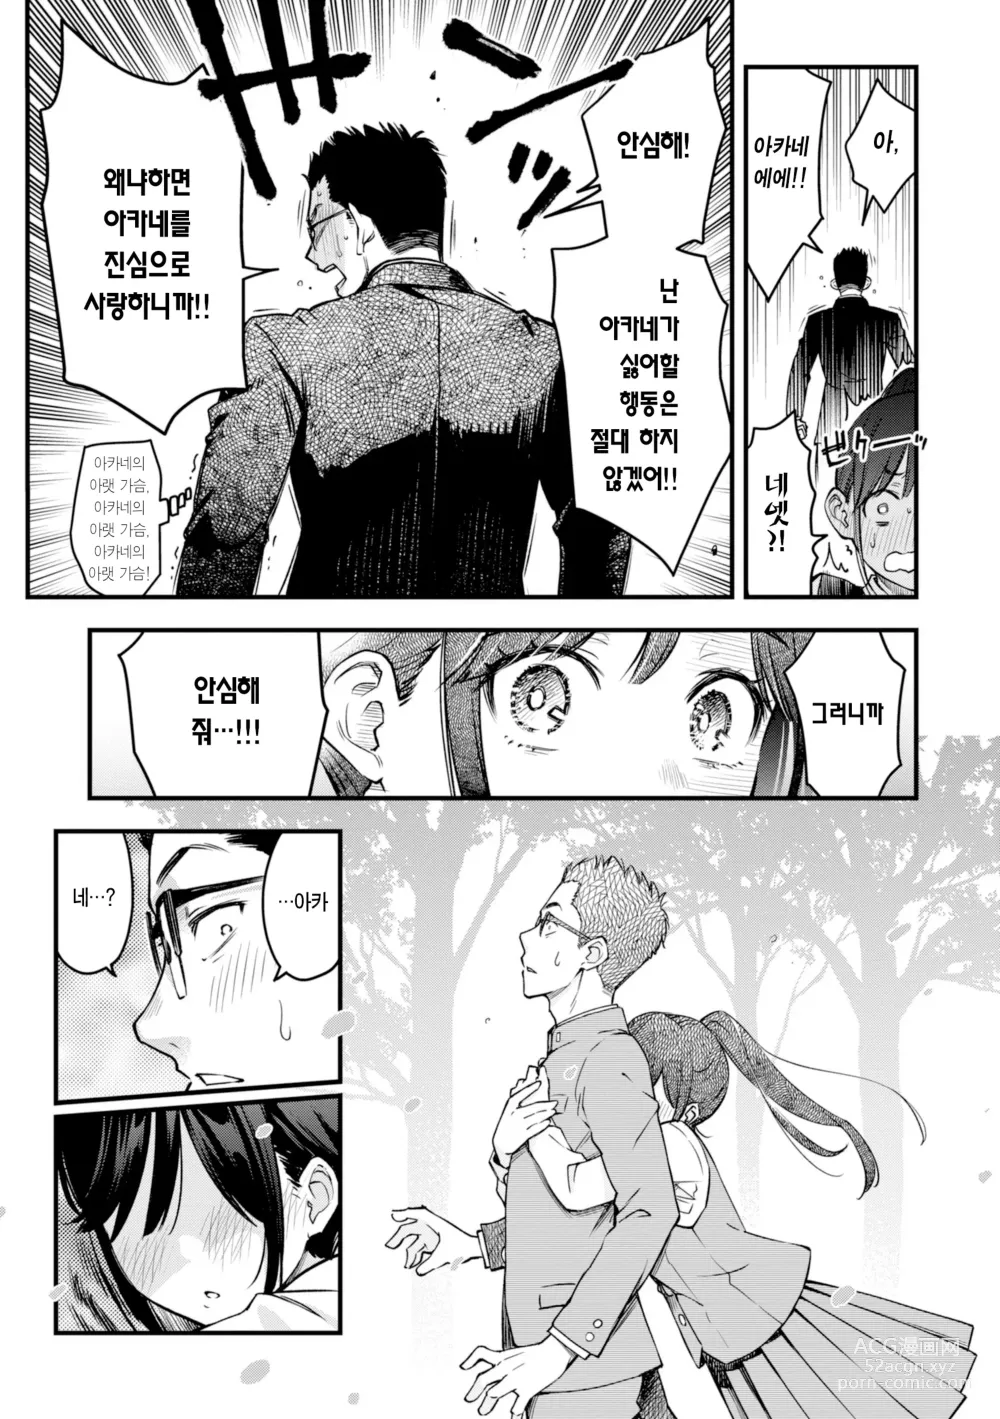 Page 19 of manga 처녀는 발정나면 안 되나요? (decensored)